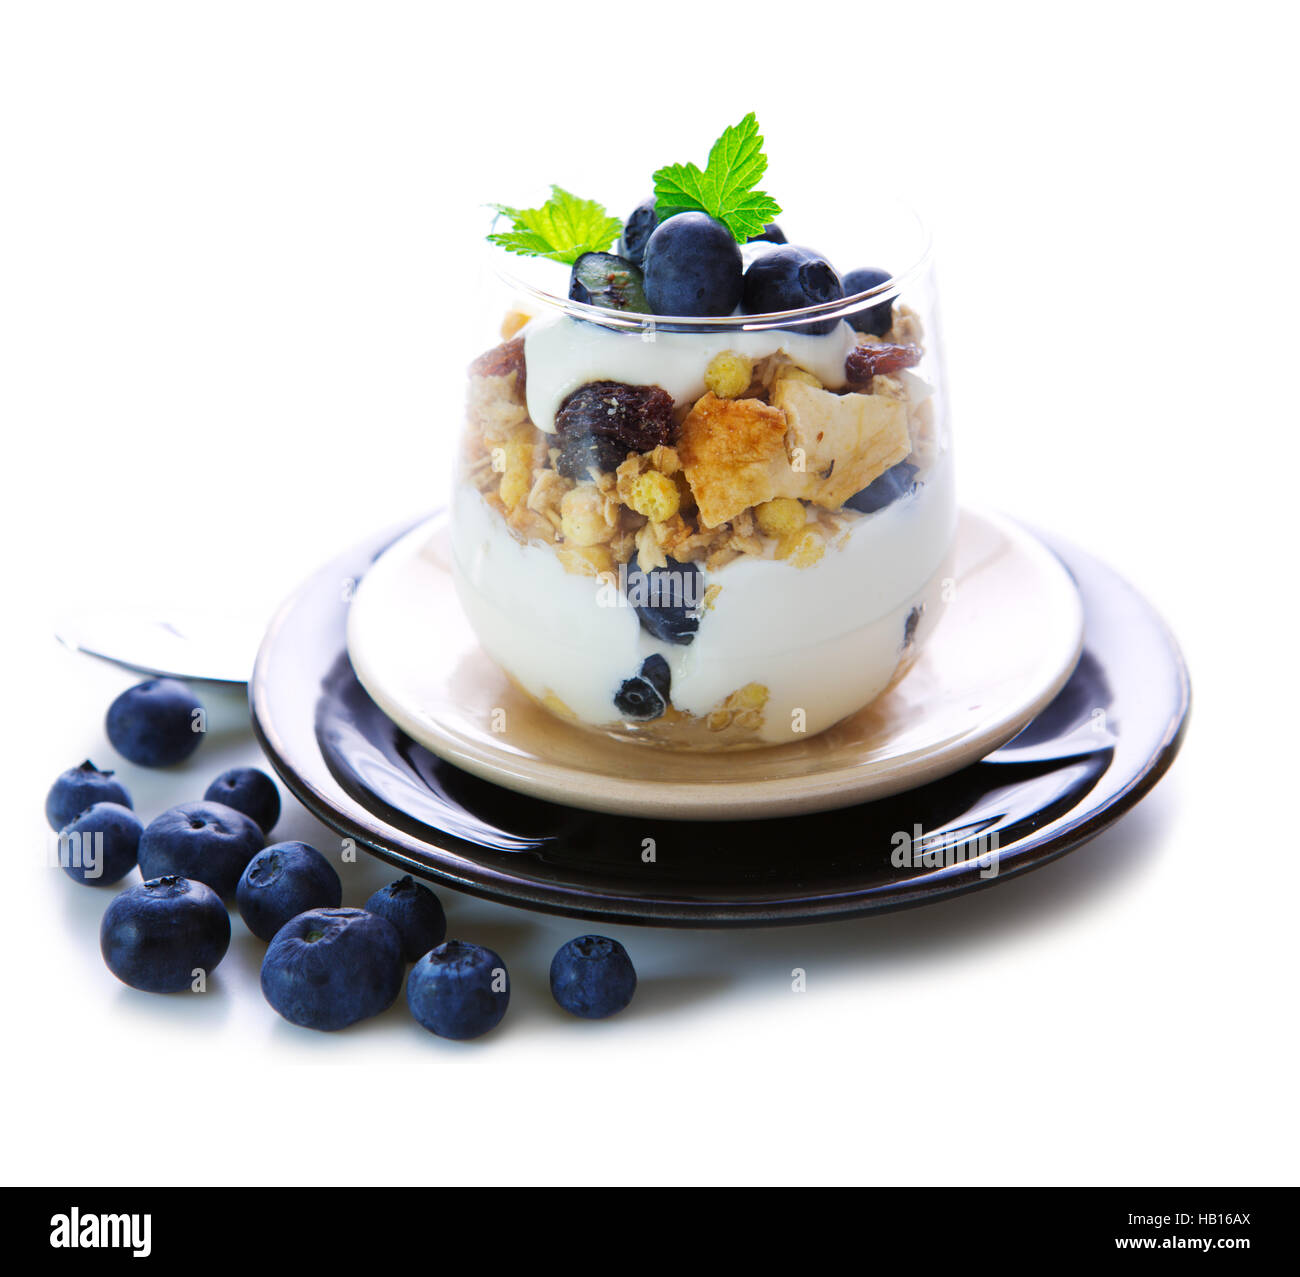 Fresh Yogurt with blueberries Stock Photo